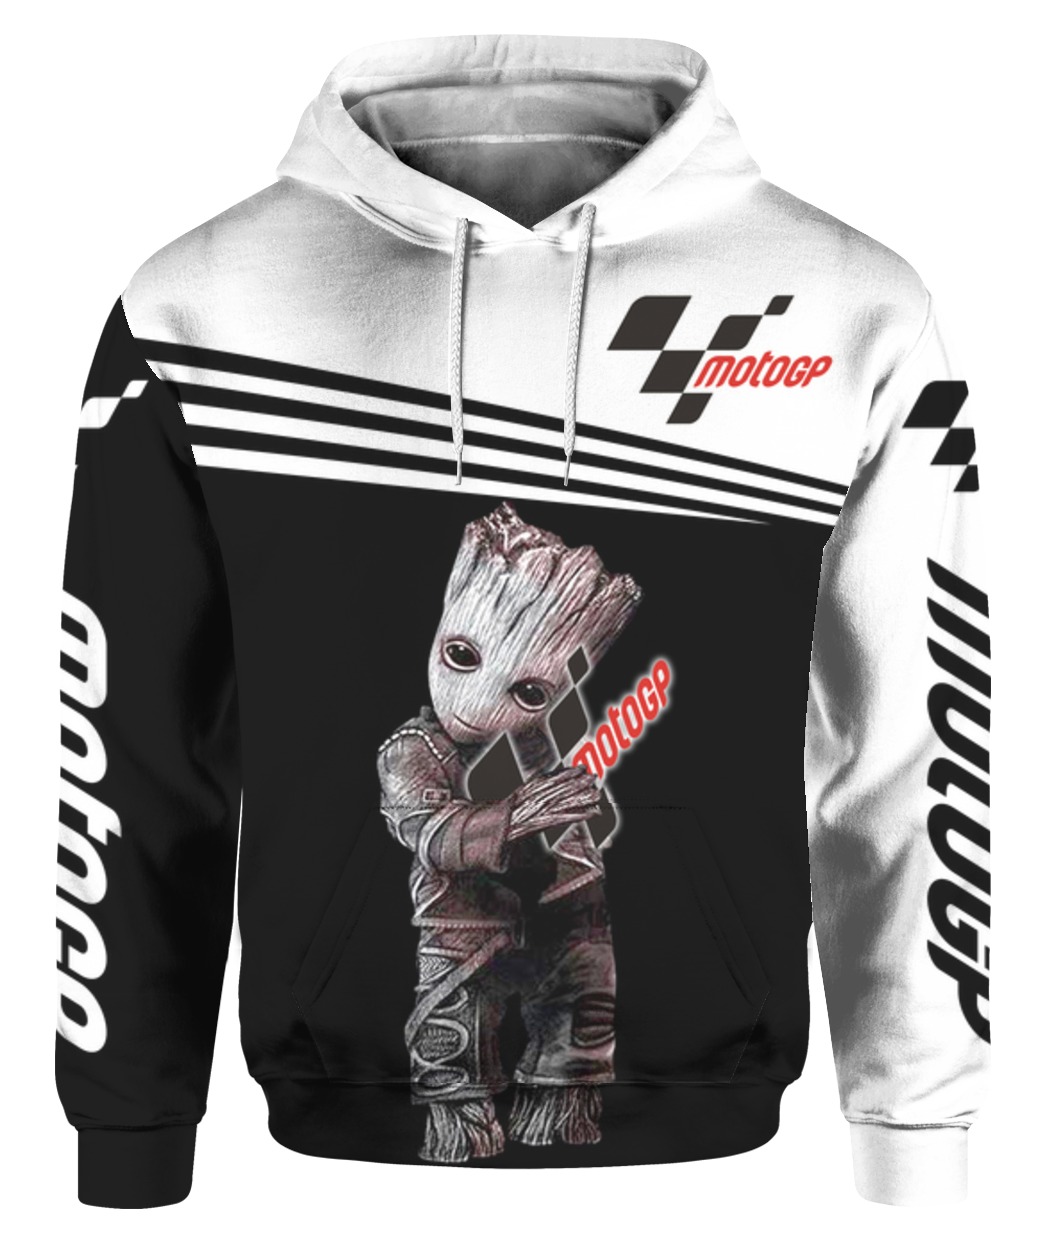 Groot hold motogp full printing hoodie 1